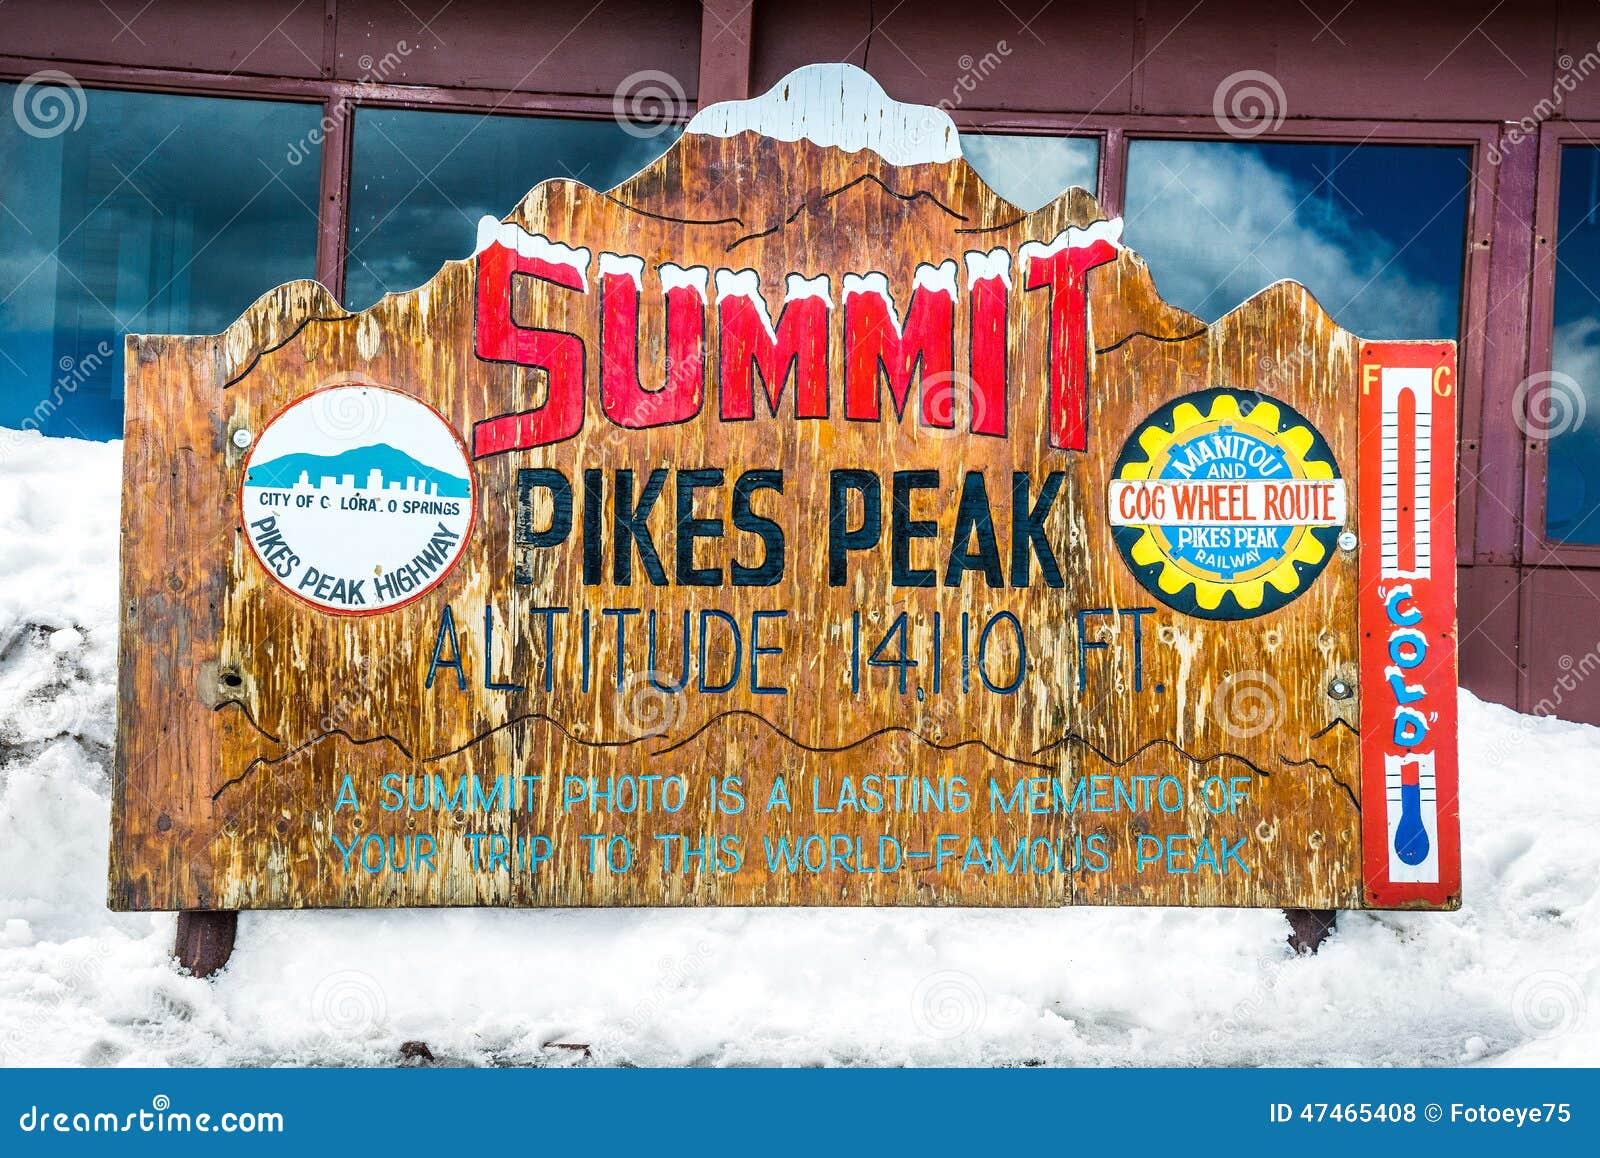 pikes peak summit - classic wood signage